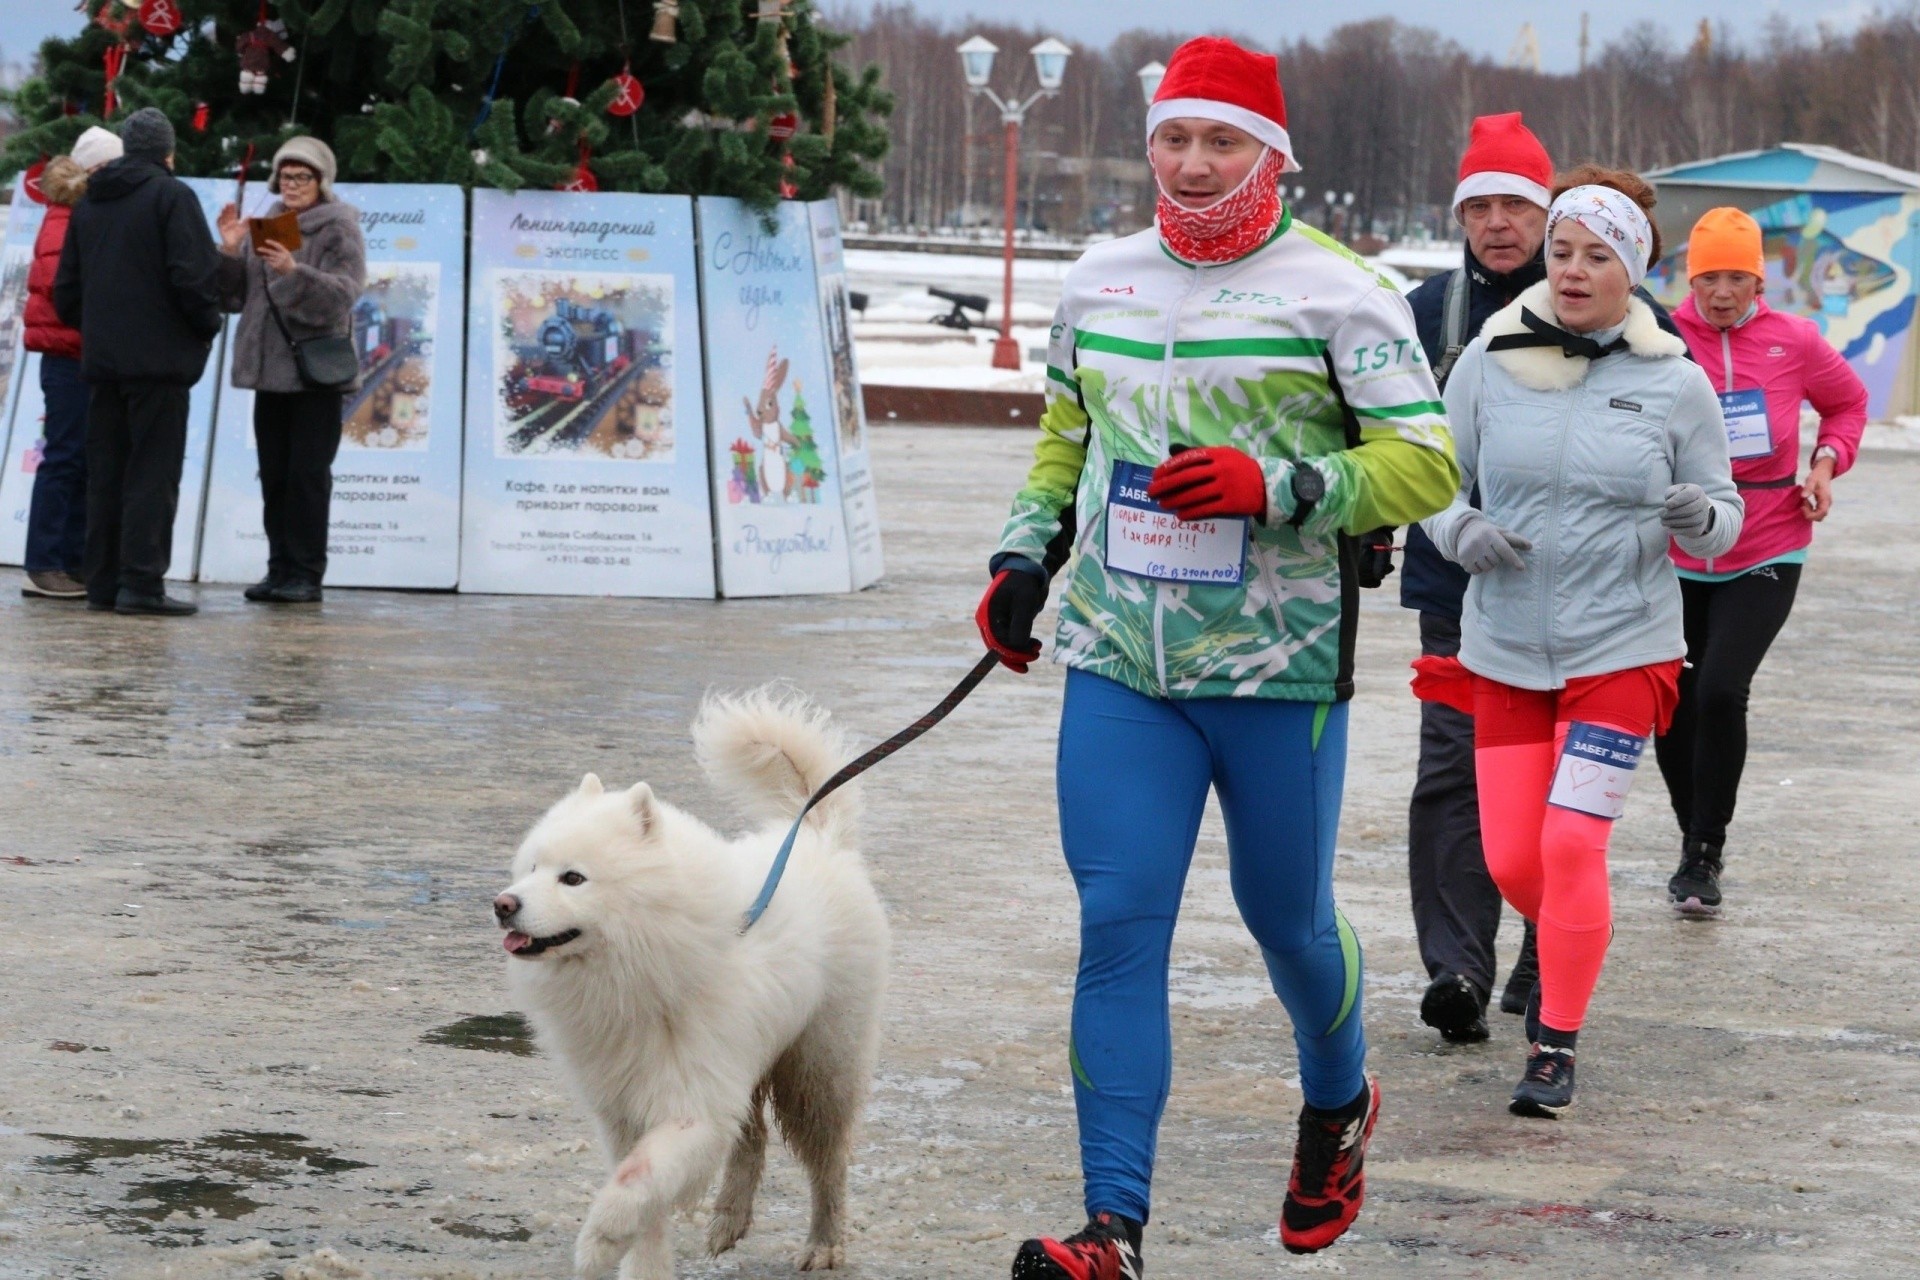 Karjalassa pidetään erilaisia urheilukilpailuja uudenvuoden lomaviikolla. Niihin kutsutaan osallistumaan lapsia ja aikuisia. Kuva: Karjalan opetus- ja urheiluministeriön VKontakte-sivu